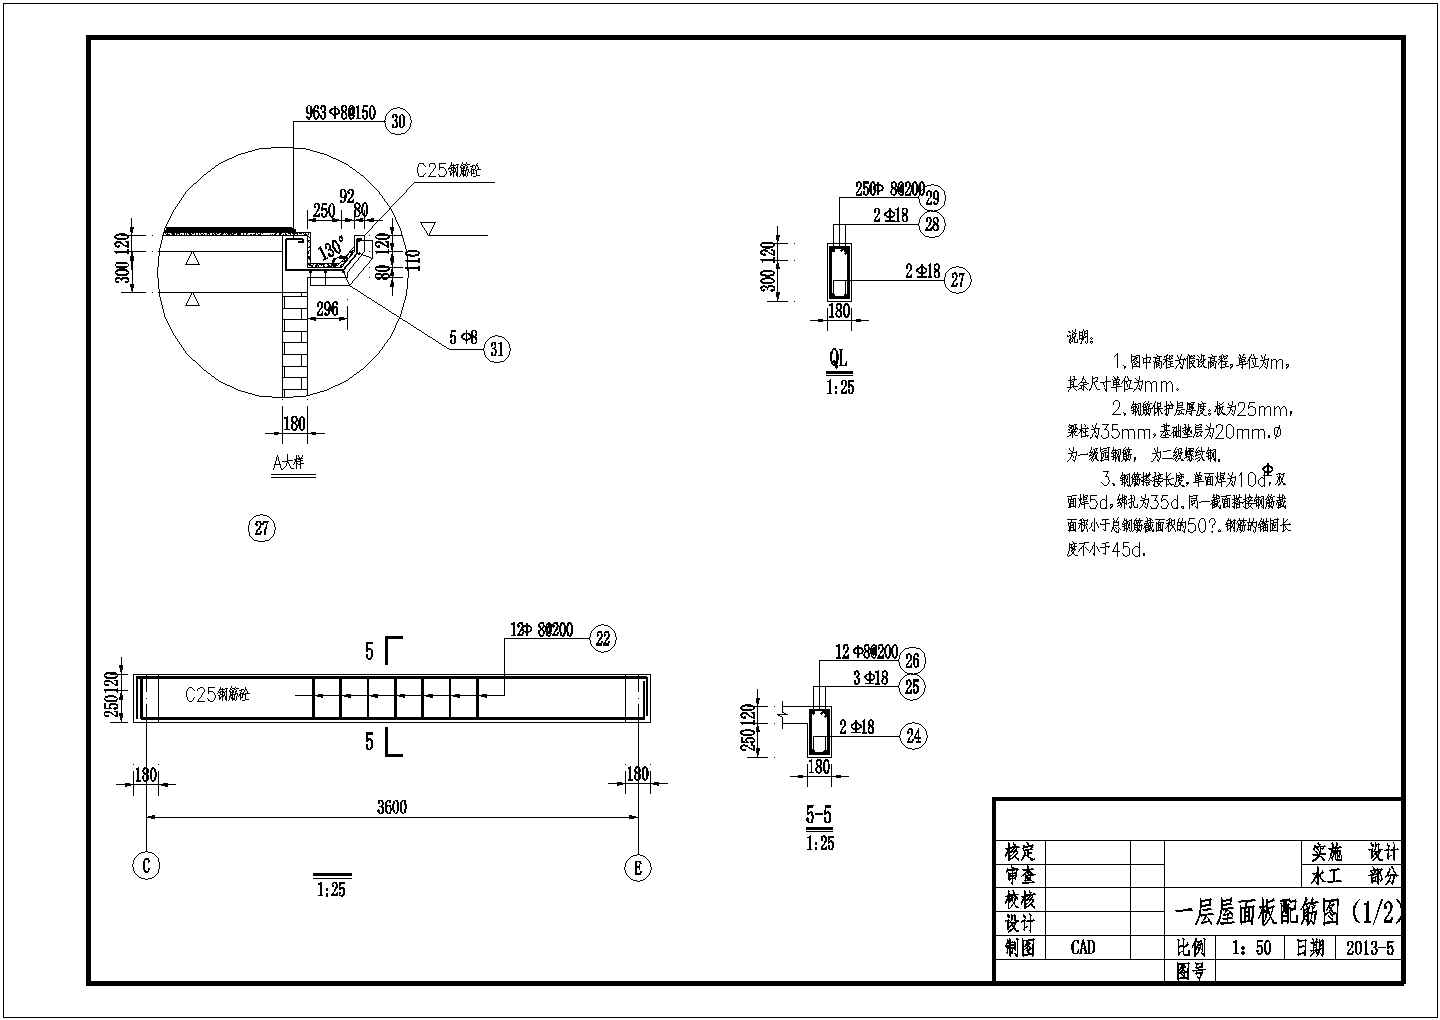 6x11m综合管理房建筑结构设计图